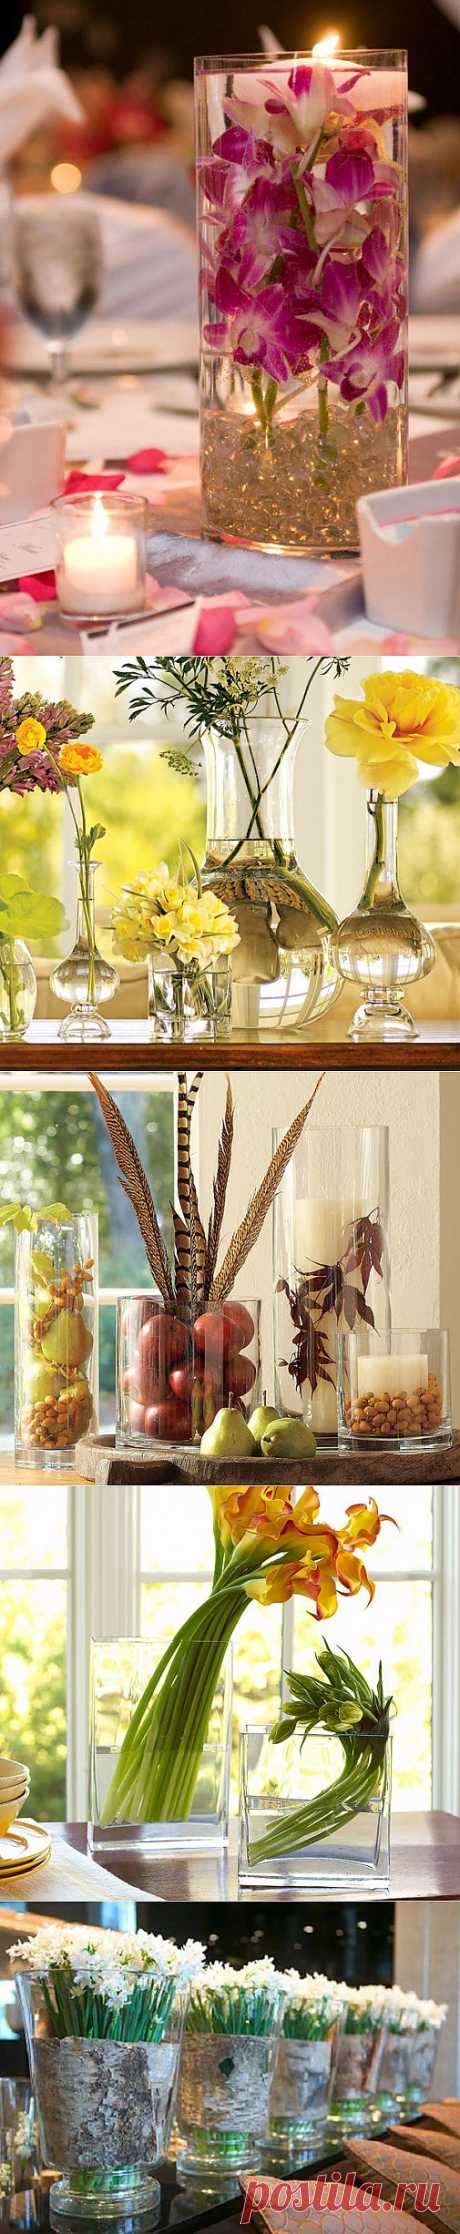 Идеи оригинальных композиций в вазах из стекла | Интерьер и Дизайн